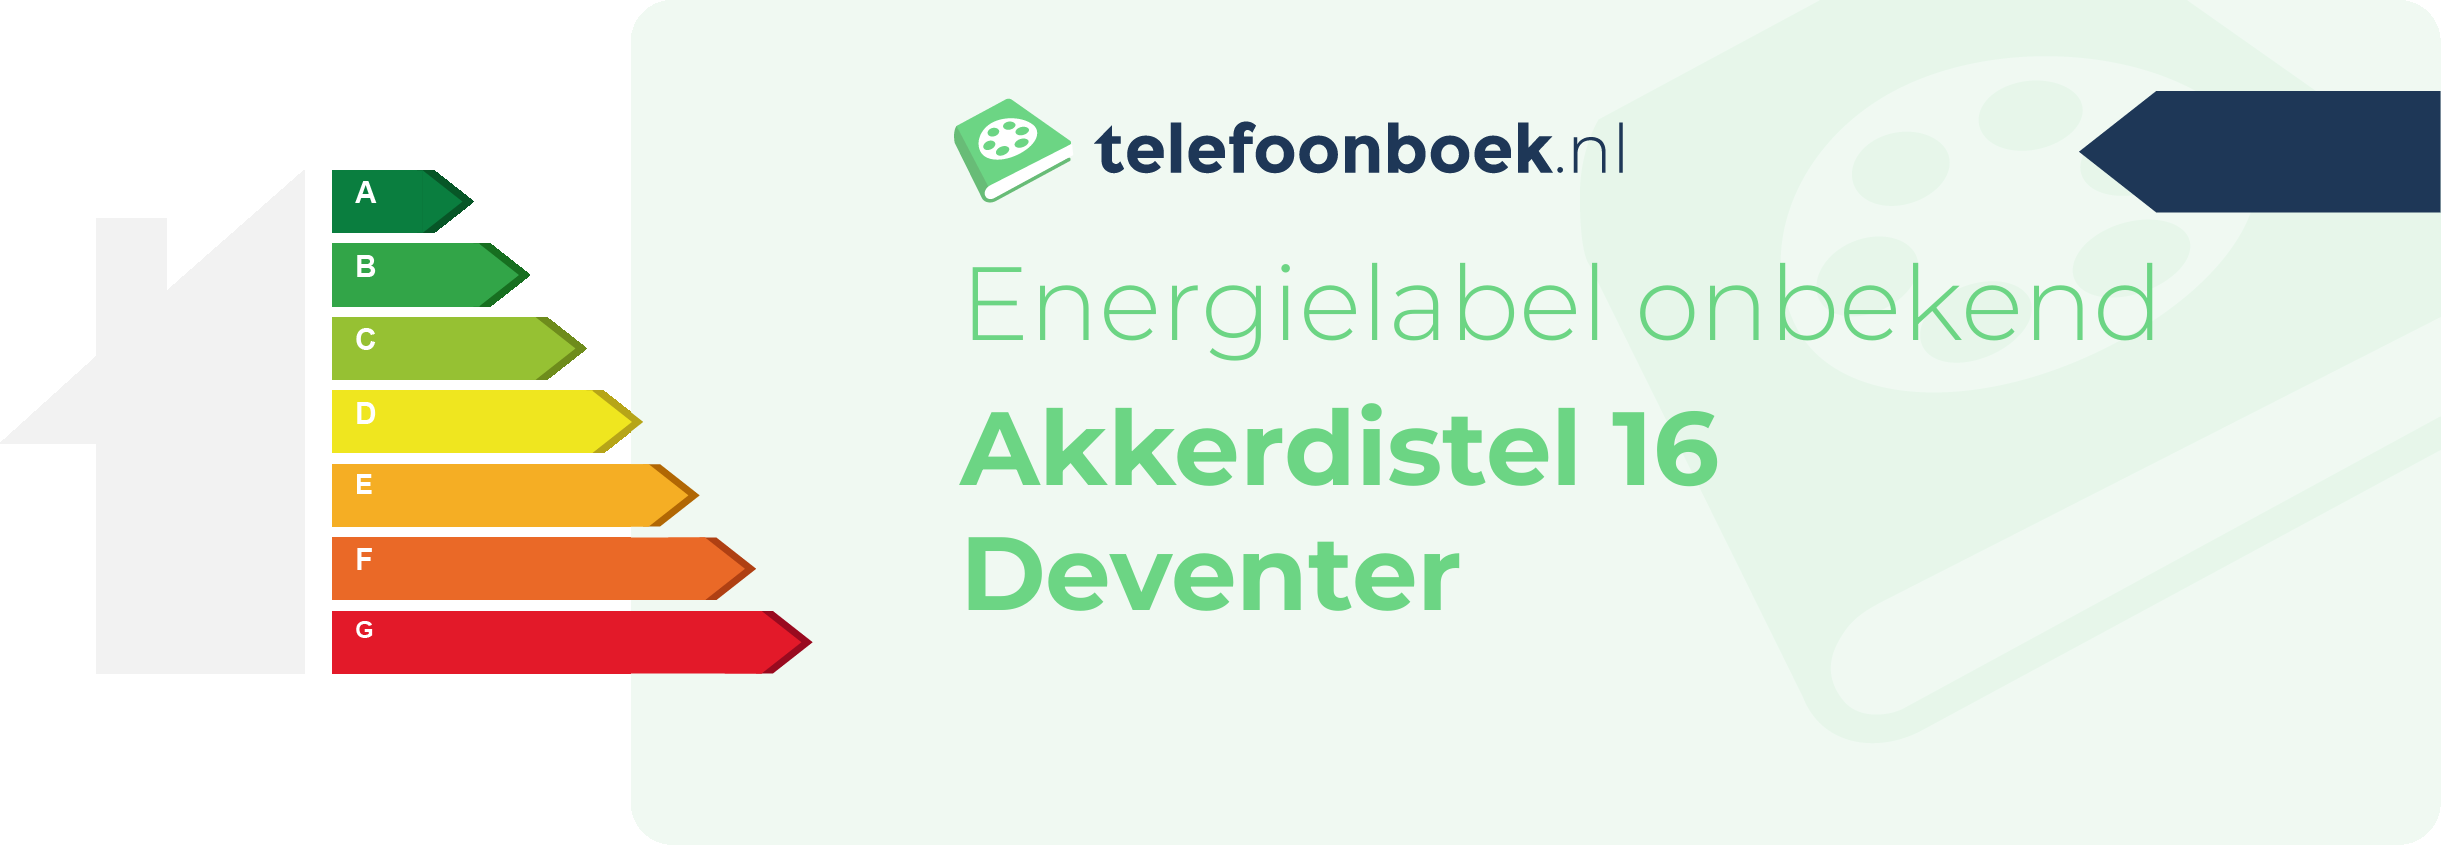 Energielabel Akkerdistel 16 Deventer